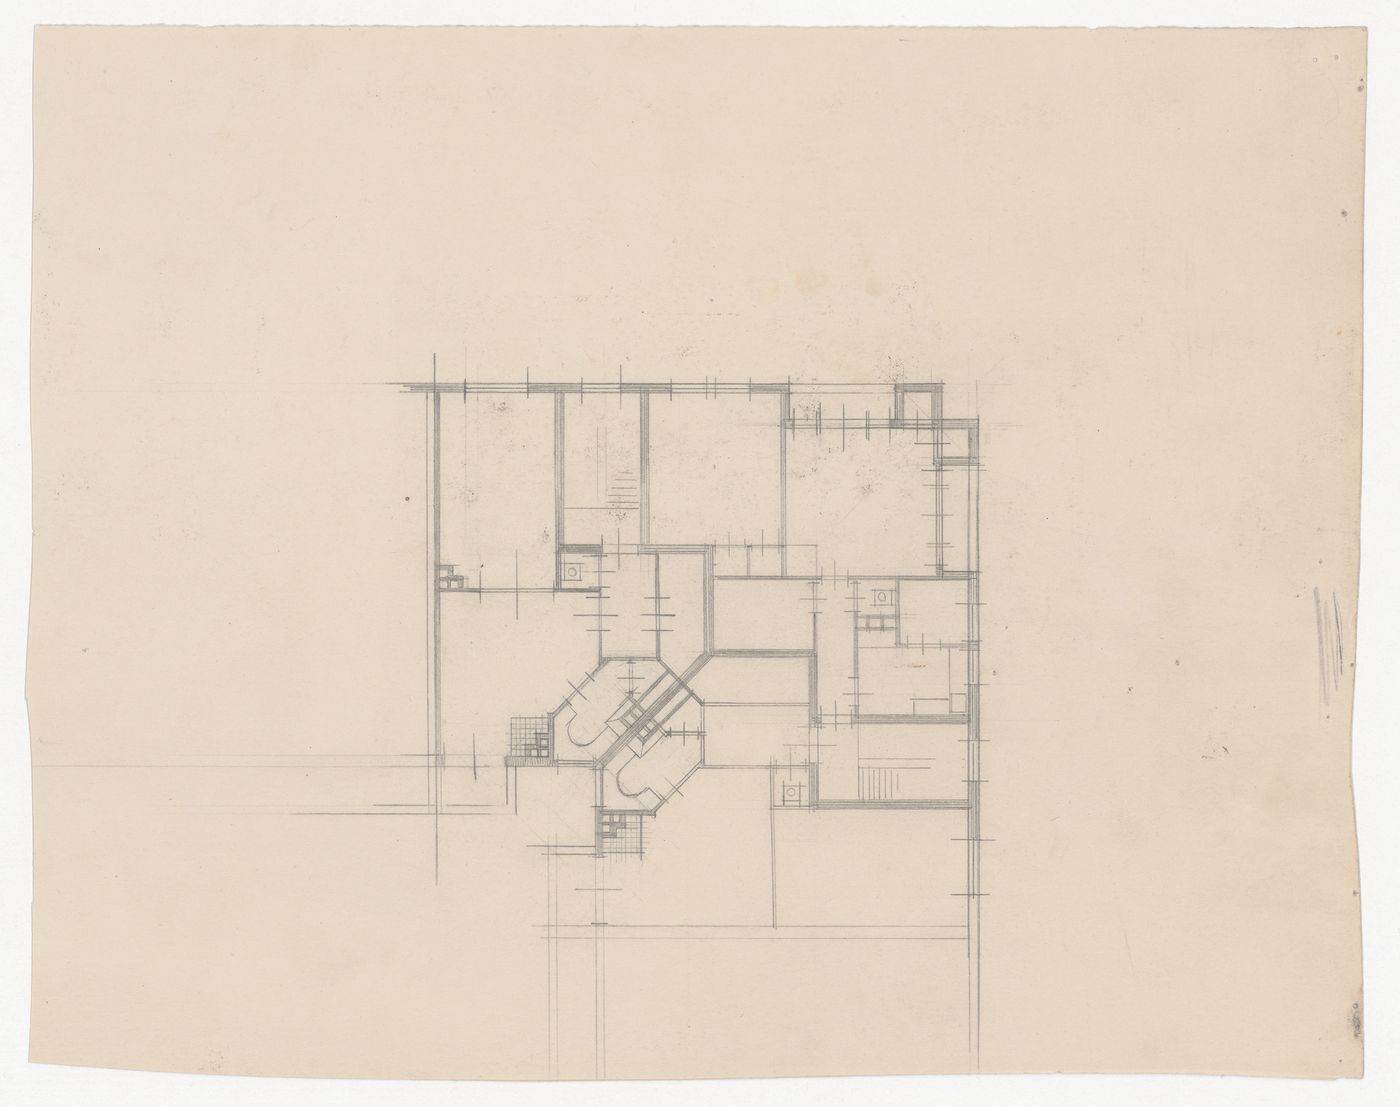 Sketch plan, possibly for Tusschendijken Housing Estate, Rotterdam, Netherlands